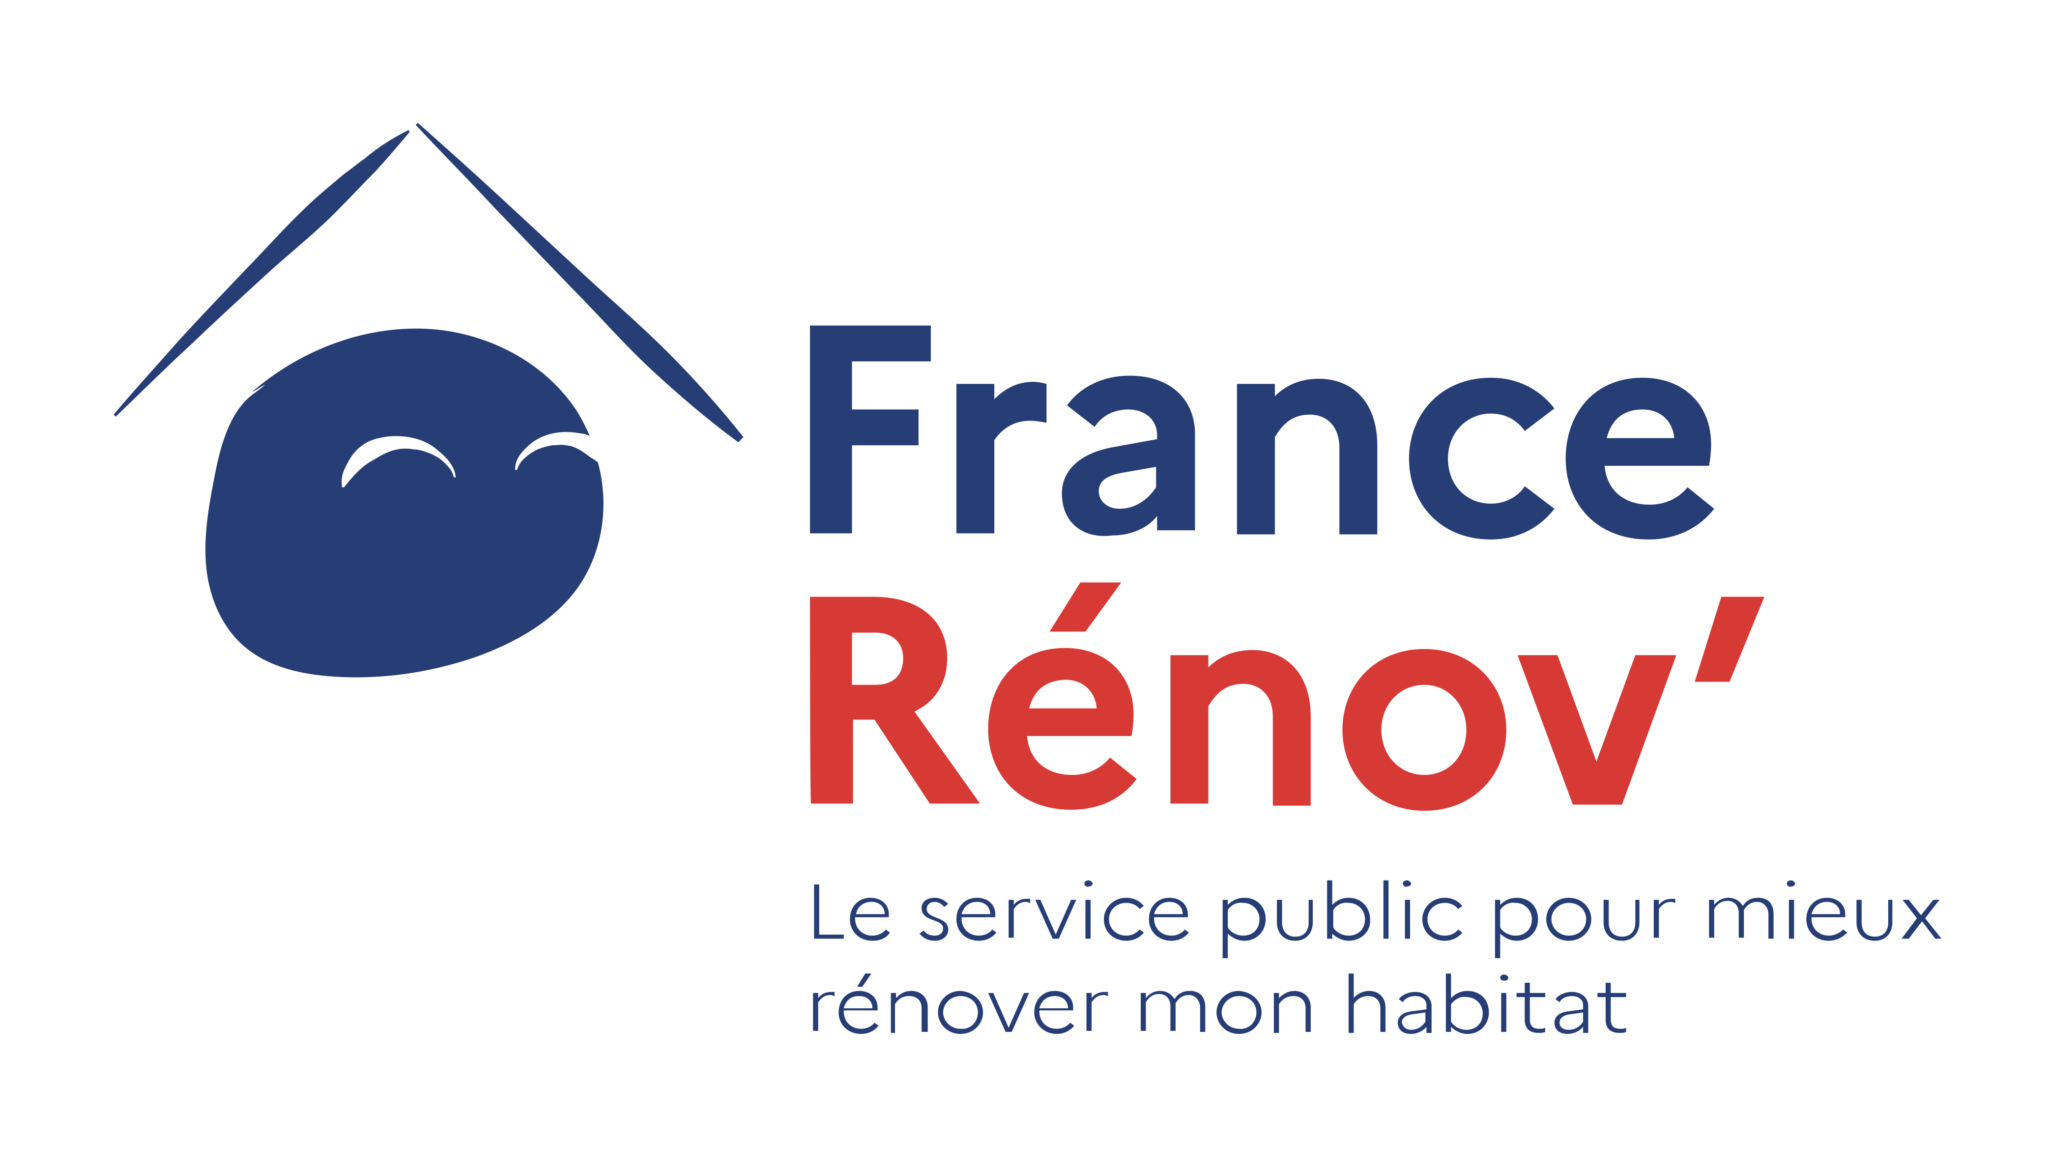 France-renov